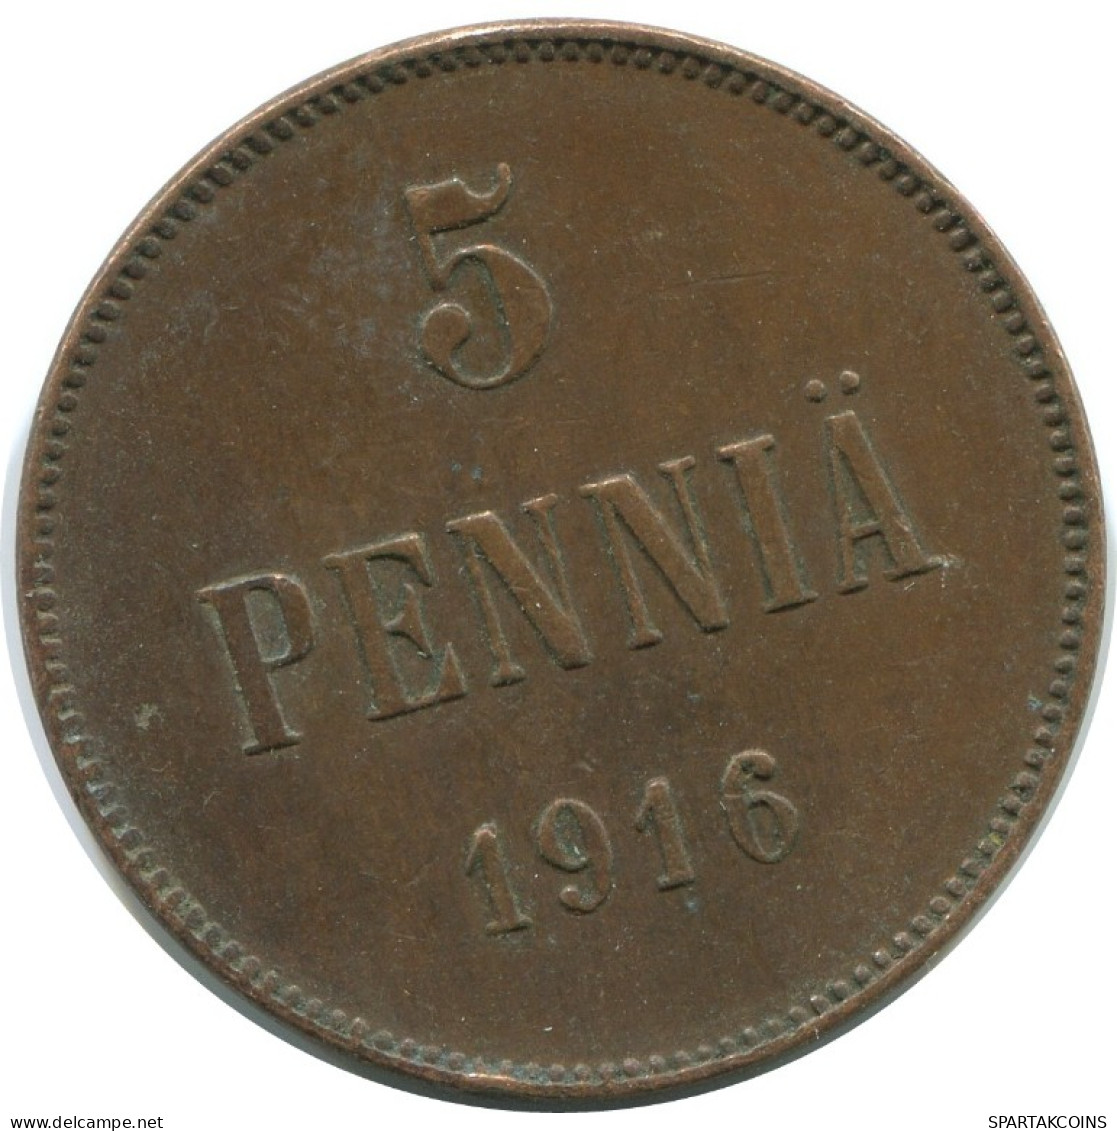 5 PENNIA 1916 FINLANDIA FINLAND Moneda RUSIA RUSSIA EMPIRE #AB271.5.E.A - Finland